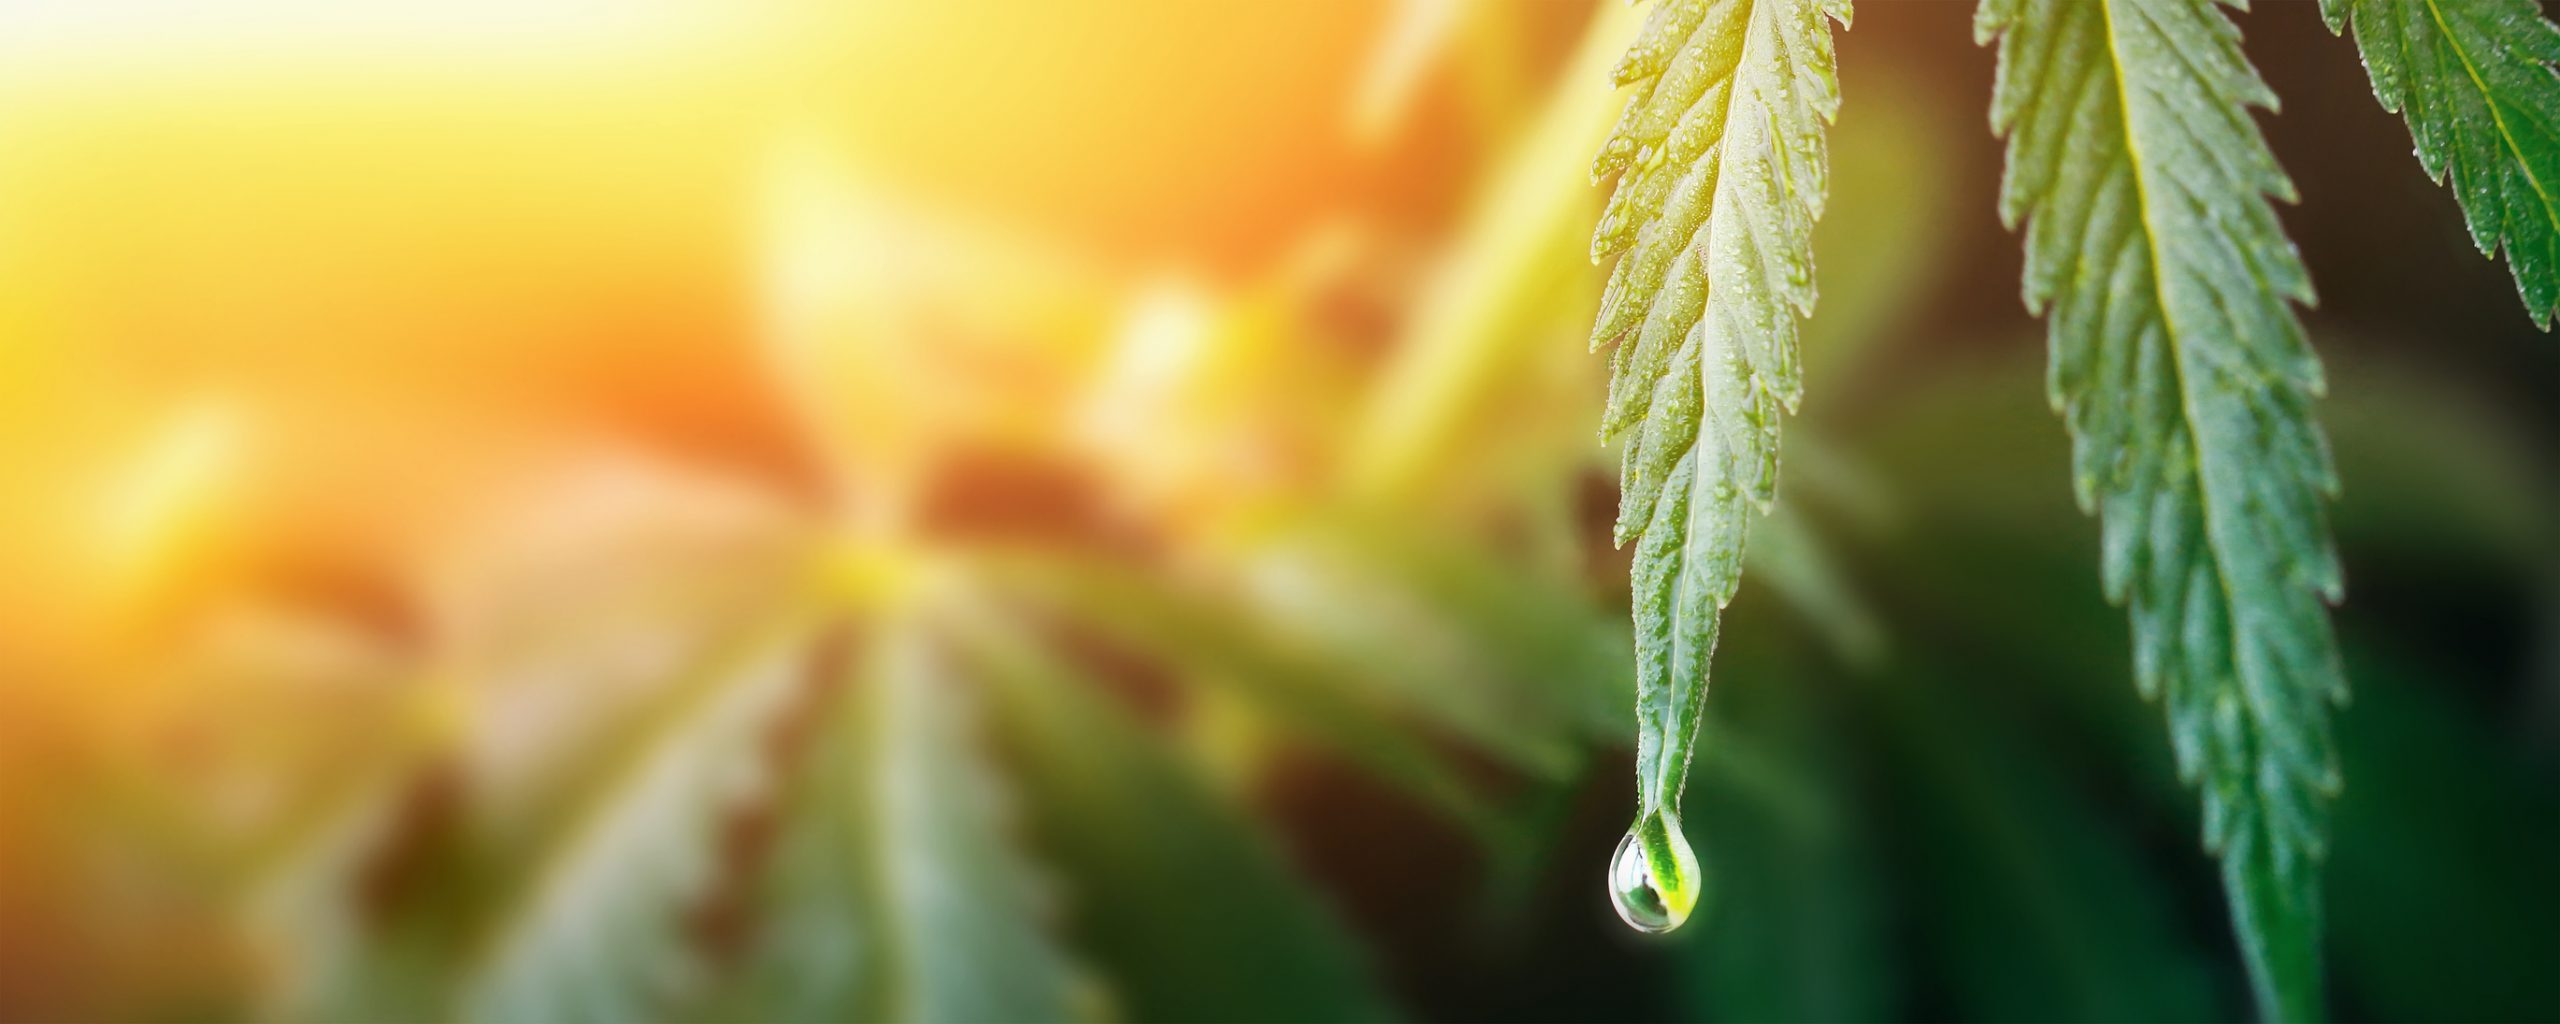 Large drop on the edge of hemp leaf, CBD oil cannabis concept, hemp oil, medicine products. Cannabidiol or CBD cannabis